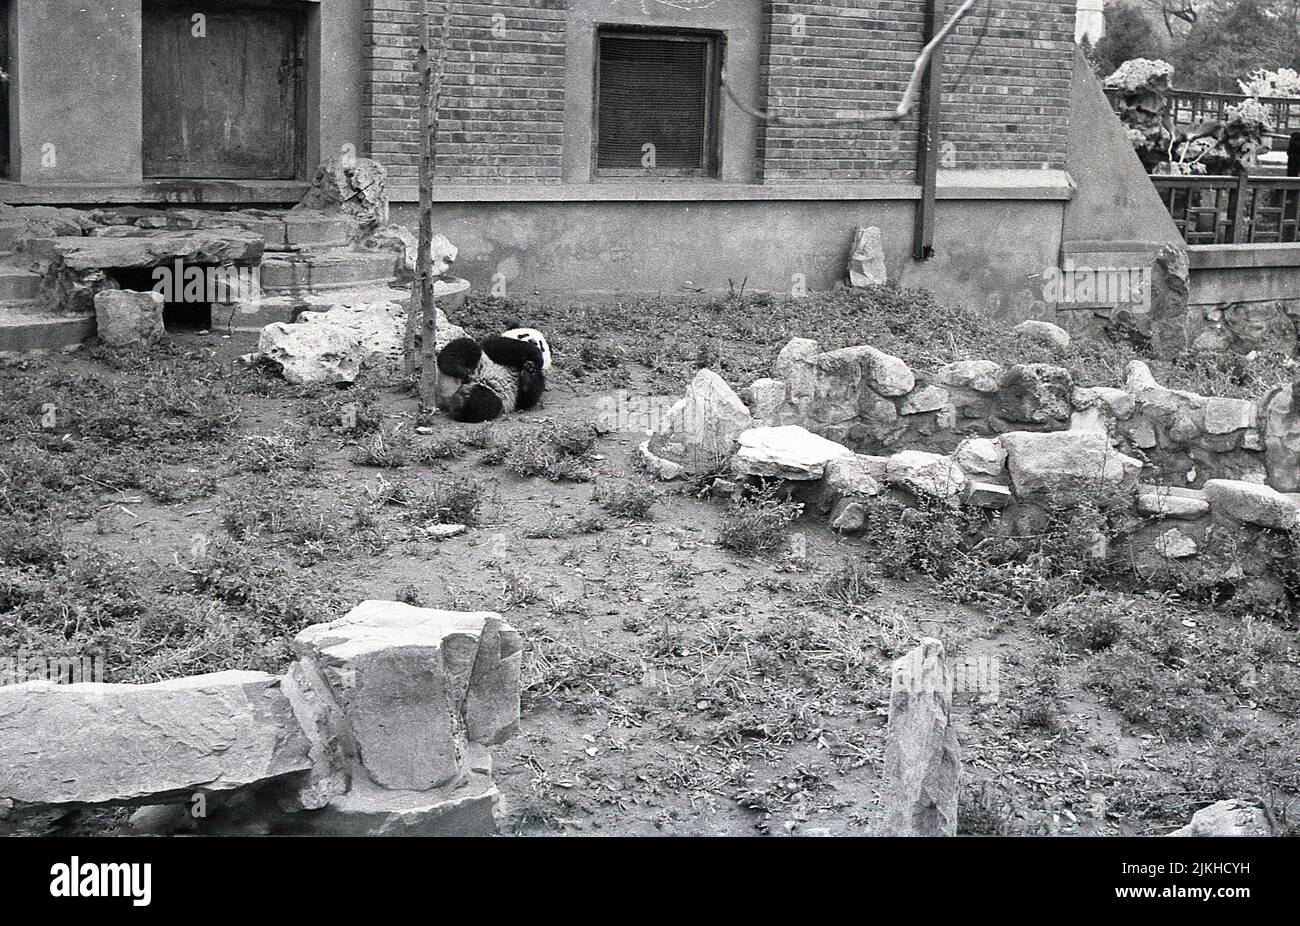 1963, histórico, zoo de Londres, panda en recinto. Chi Chi Chi, un panda femenino gigante de Sichuan, China, llegó al Zoo en 1958 y se convirtió en una de las principales atracciones del Zoo. Foto de stock